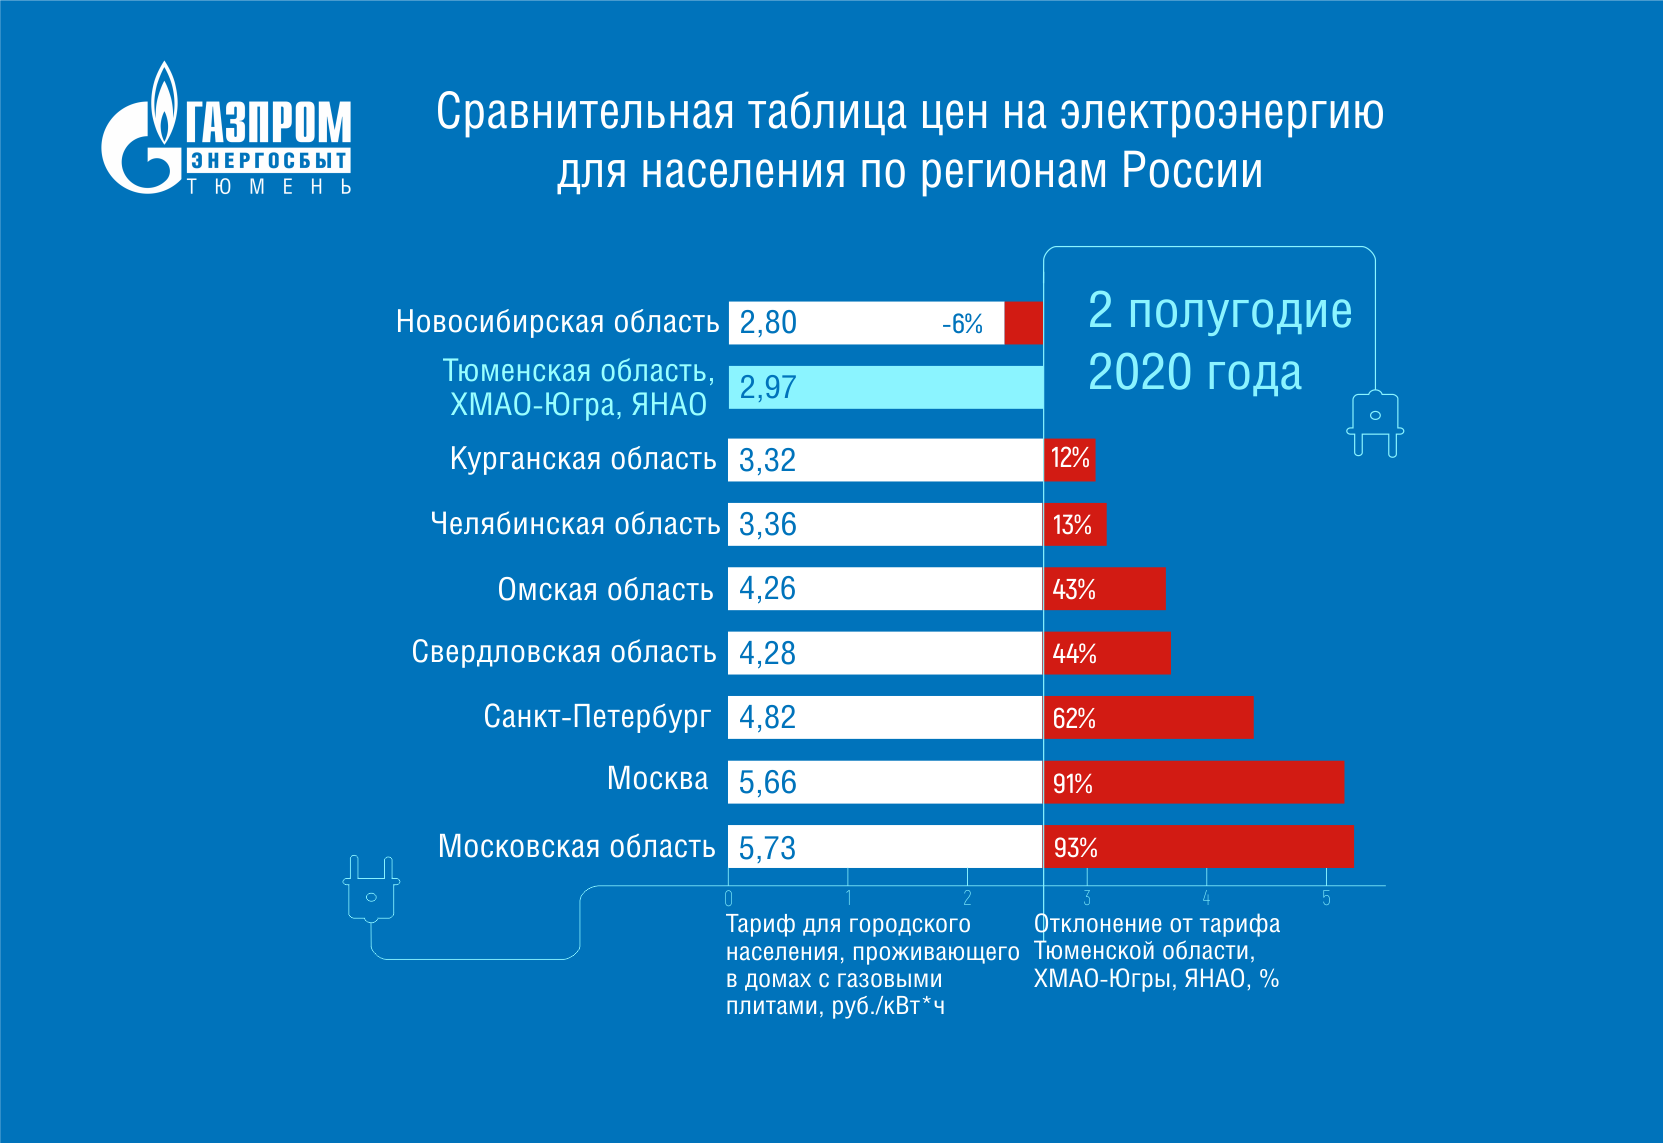 Актуальные тарифы на электроэнергию с 1 января 2020 года для населения в Крыму для жителей городов и сел Узнайте, сколько платить за свет в 2020-м году